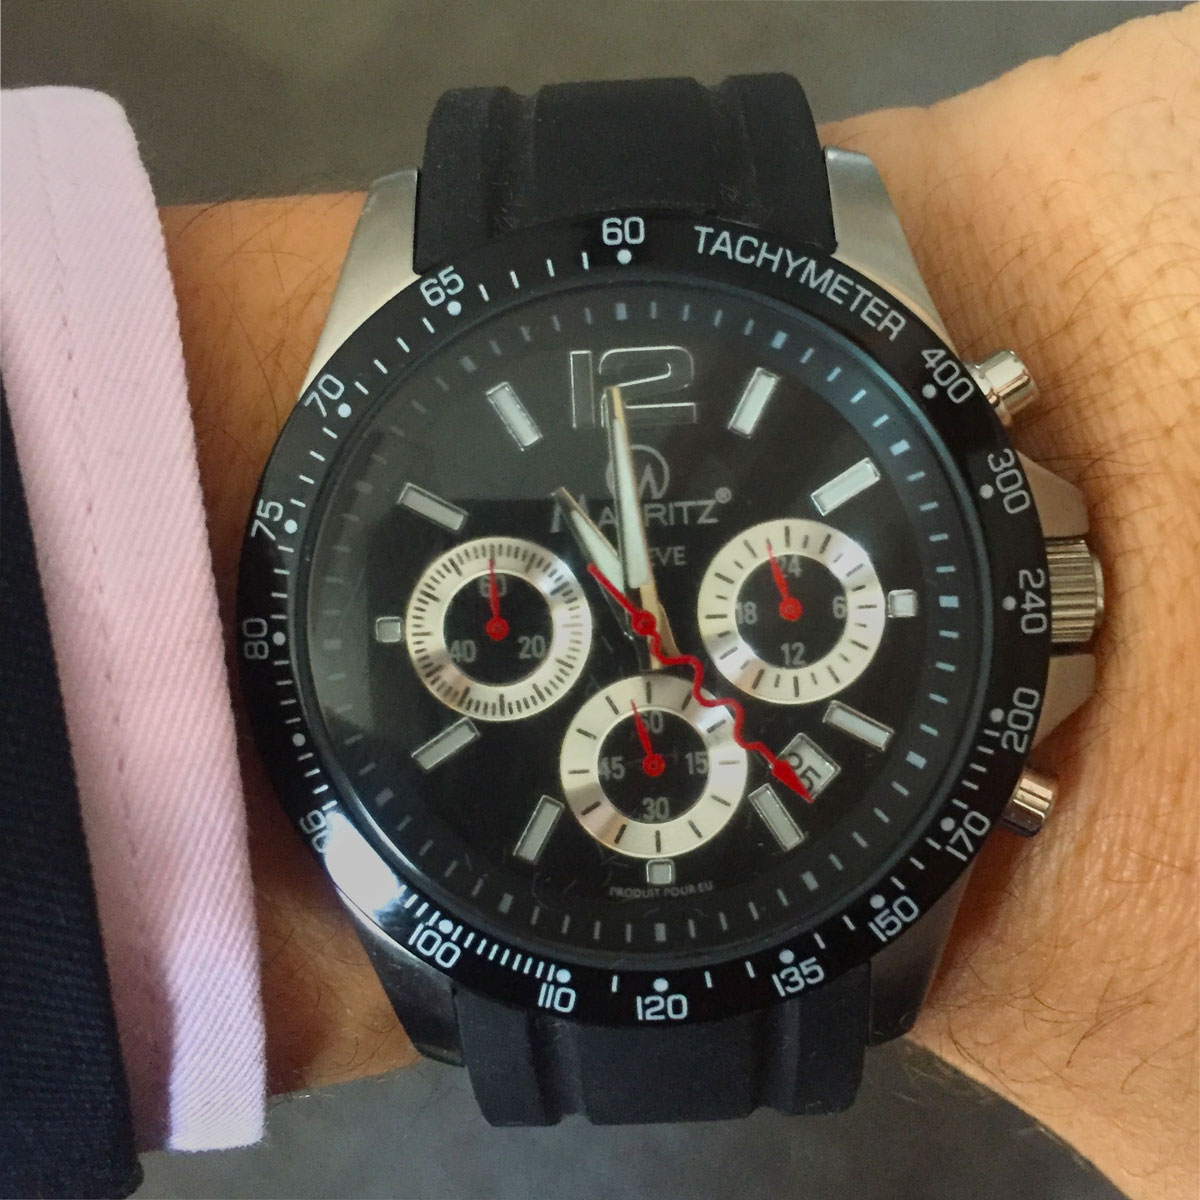 Sportovní hodinky Mauritz Genéve RS0202